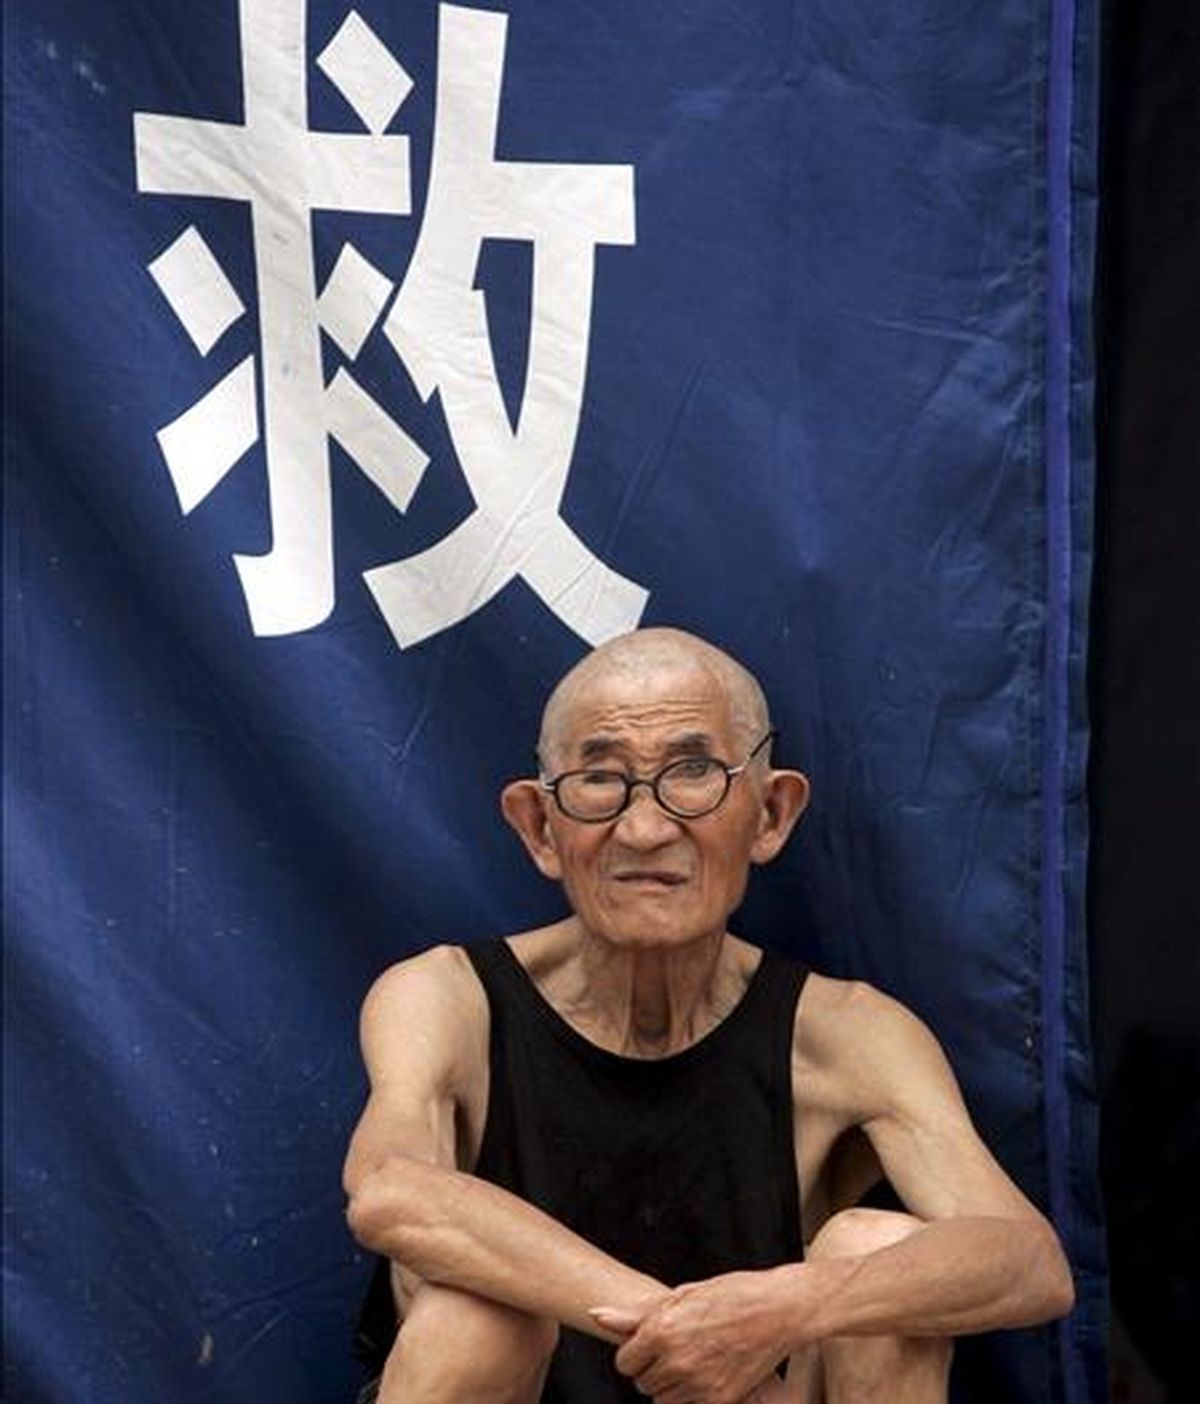 Un taiwanés de 96 años de edad recibirá este fin de semana su título de Maestría en Filosofía en la Universidad de Nanhua, se informó hoy en una conferencia de prensa en ese centro educativo. EFE/Archivo